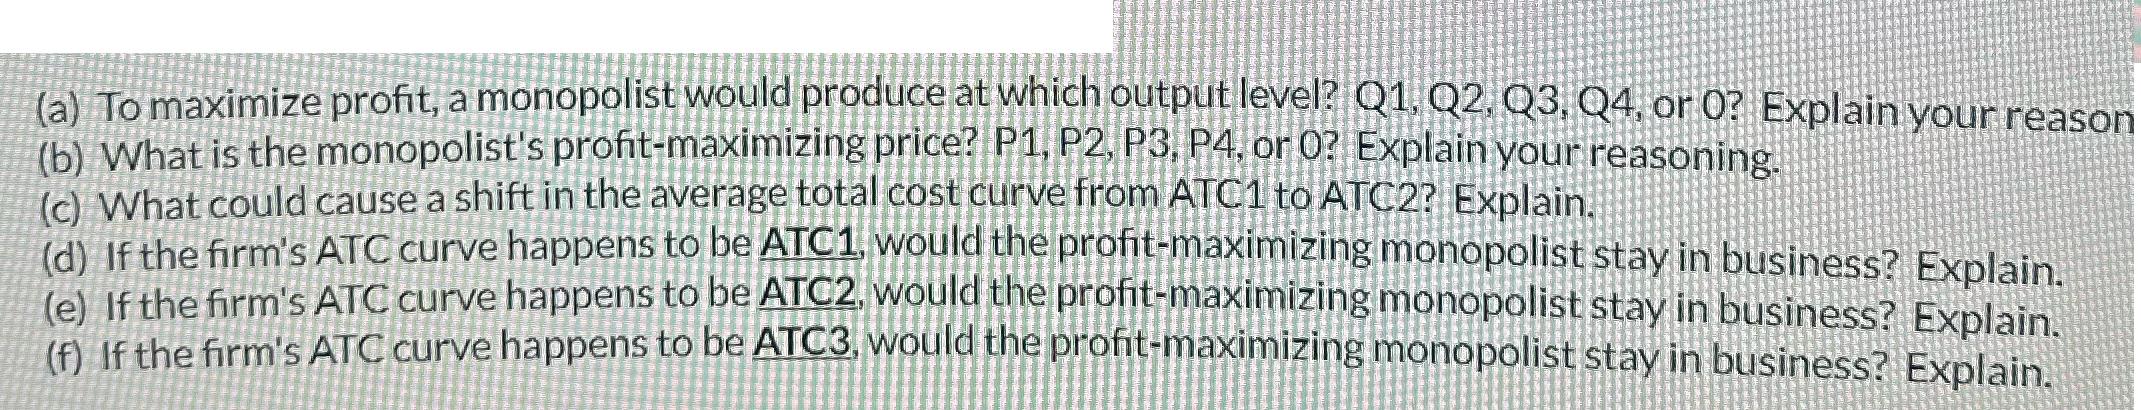 (a) To maximize profit, a monopolist would produce at which output level? Q1, Q2, Q3, Q4, or 0? Explain your